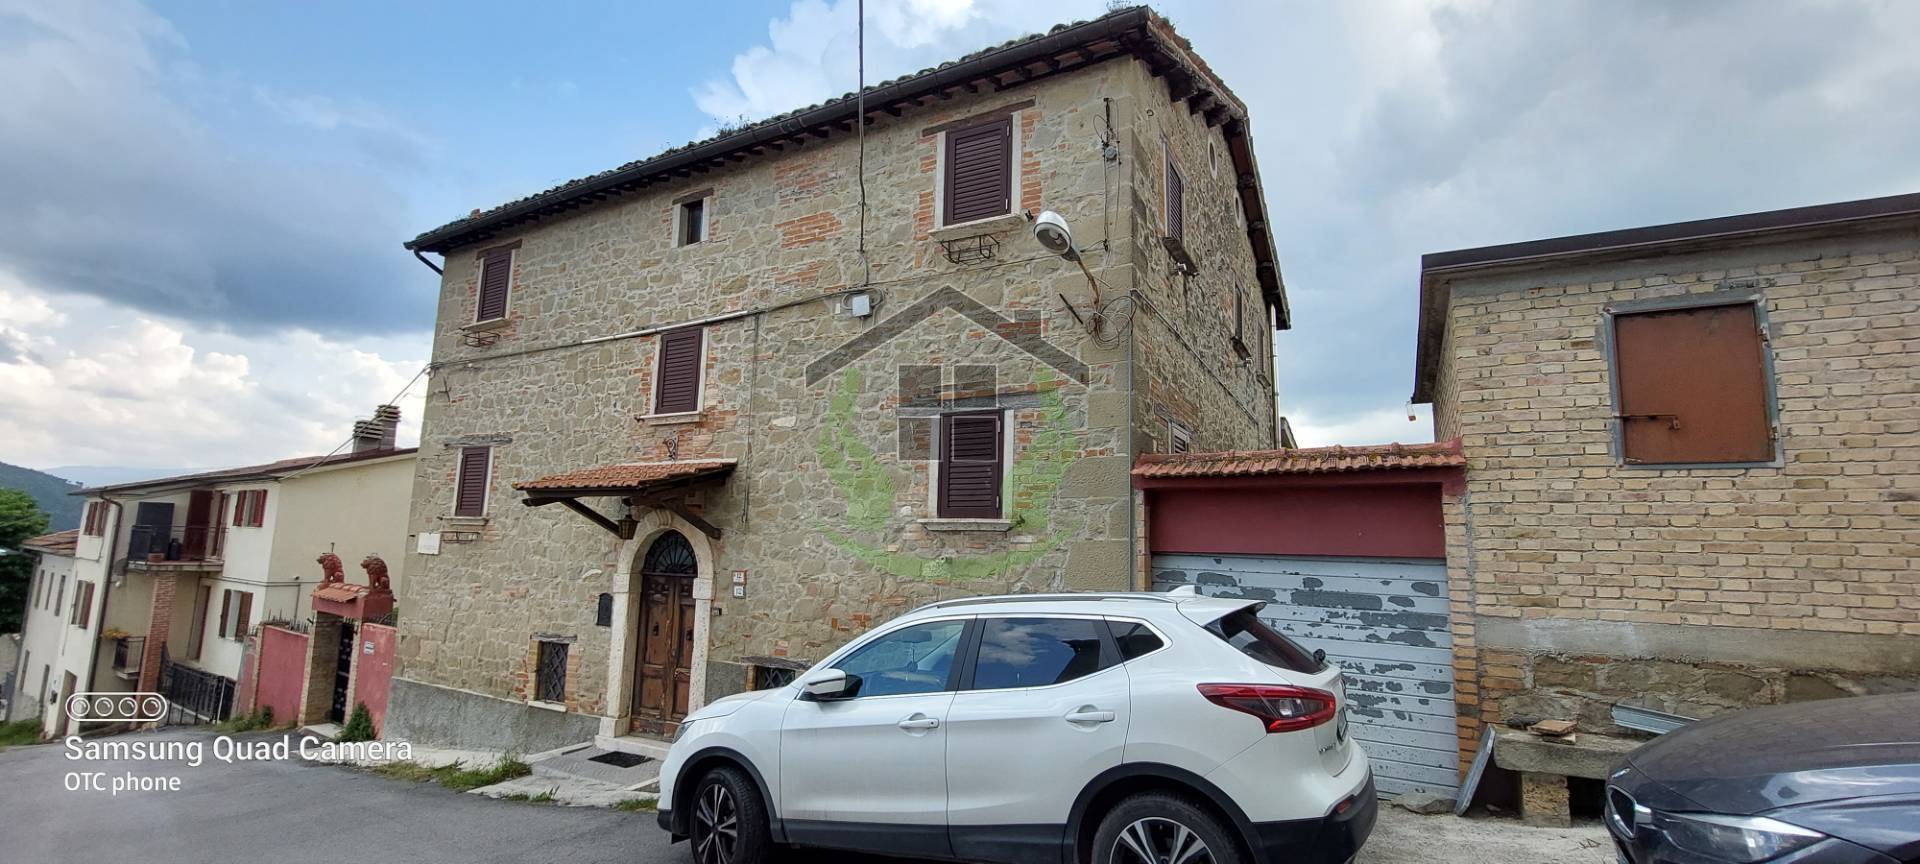 Rustico / Casale in vendita a Roccafluvione, 11 locali, prezzo € 250.000 | CambioCasa.it